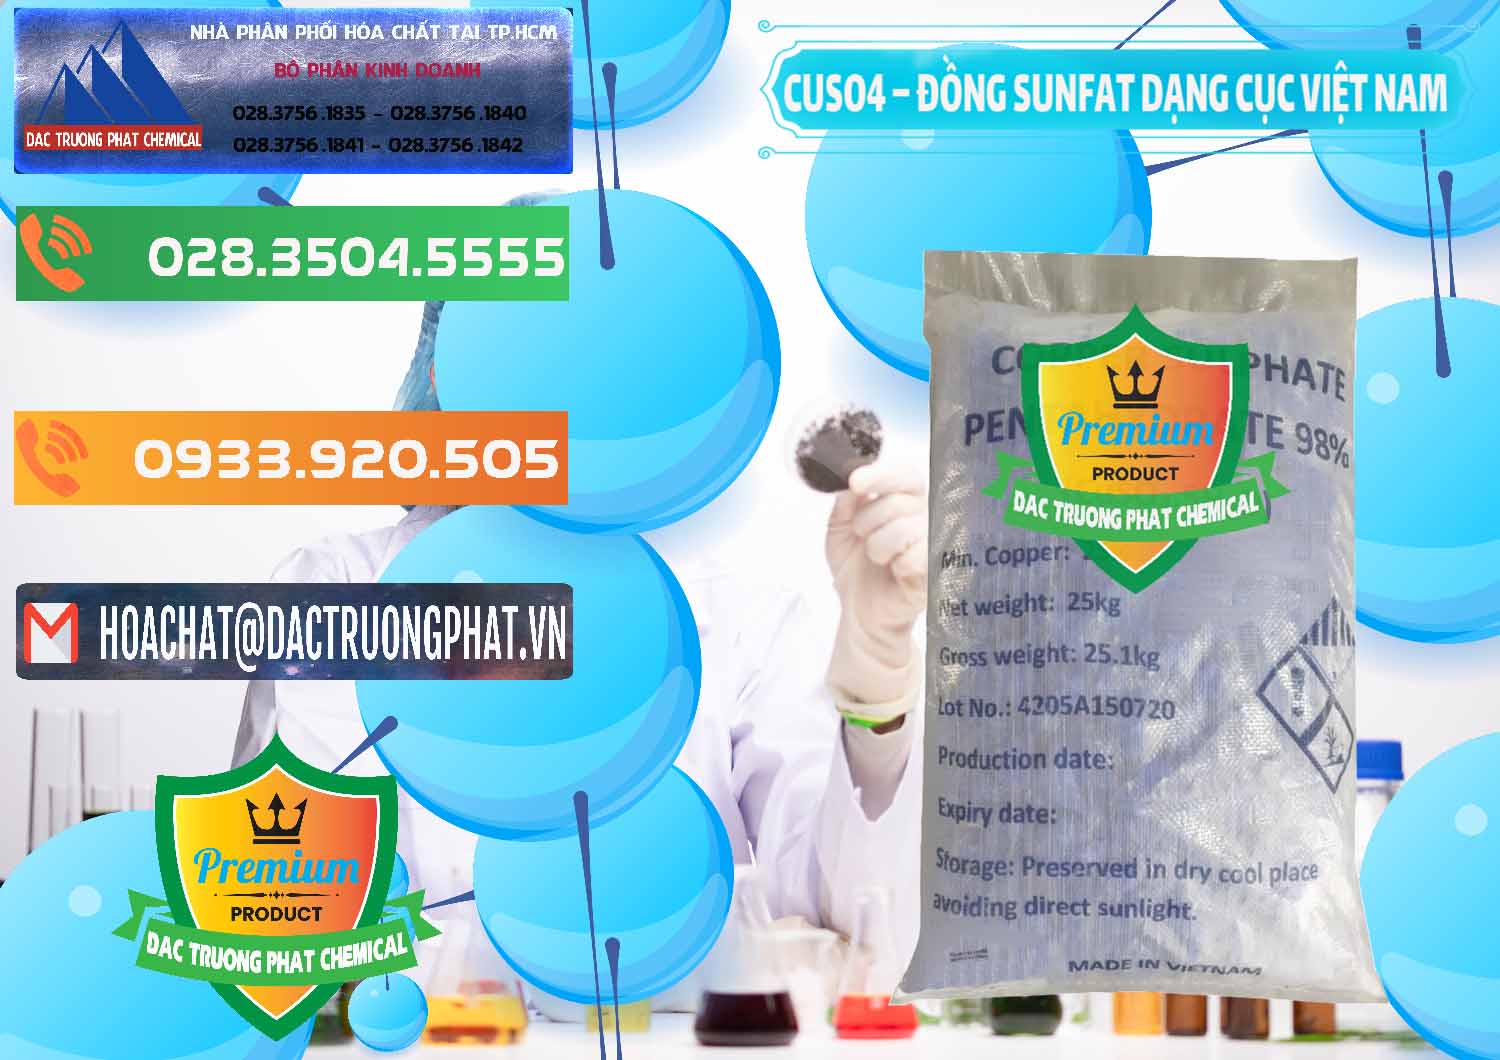 Đơn vị kinh doanh & phân phối CUSO4 – Đồng Sunfat Dạng Cục Việt Nam - 0303 - Công ty bán ( phân phối ) hóa chất tại TP.HCM - hoachatxulynuoc.com.vn